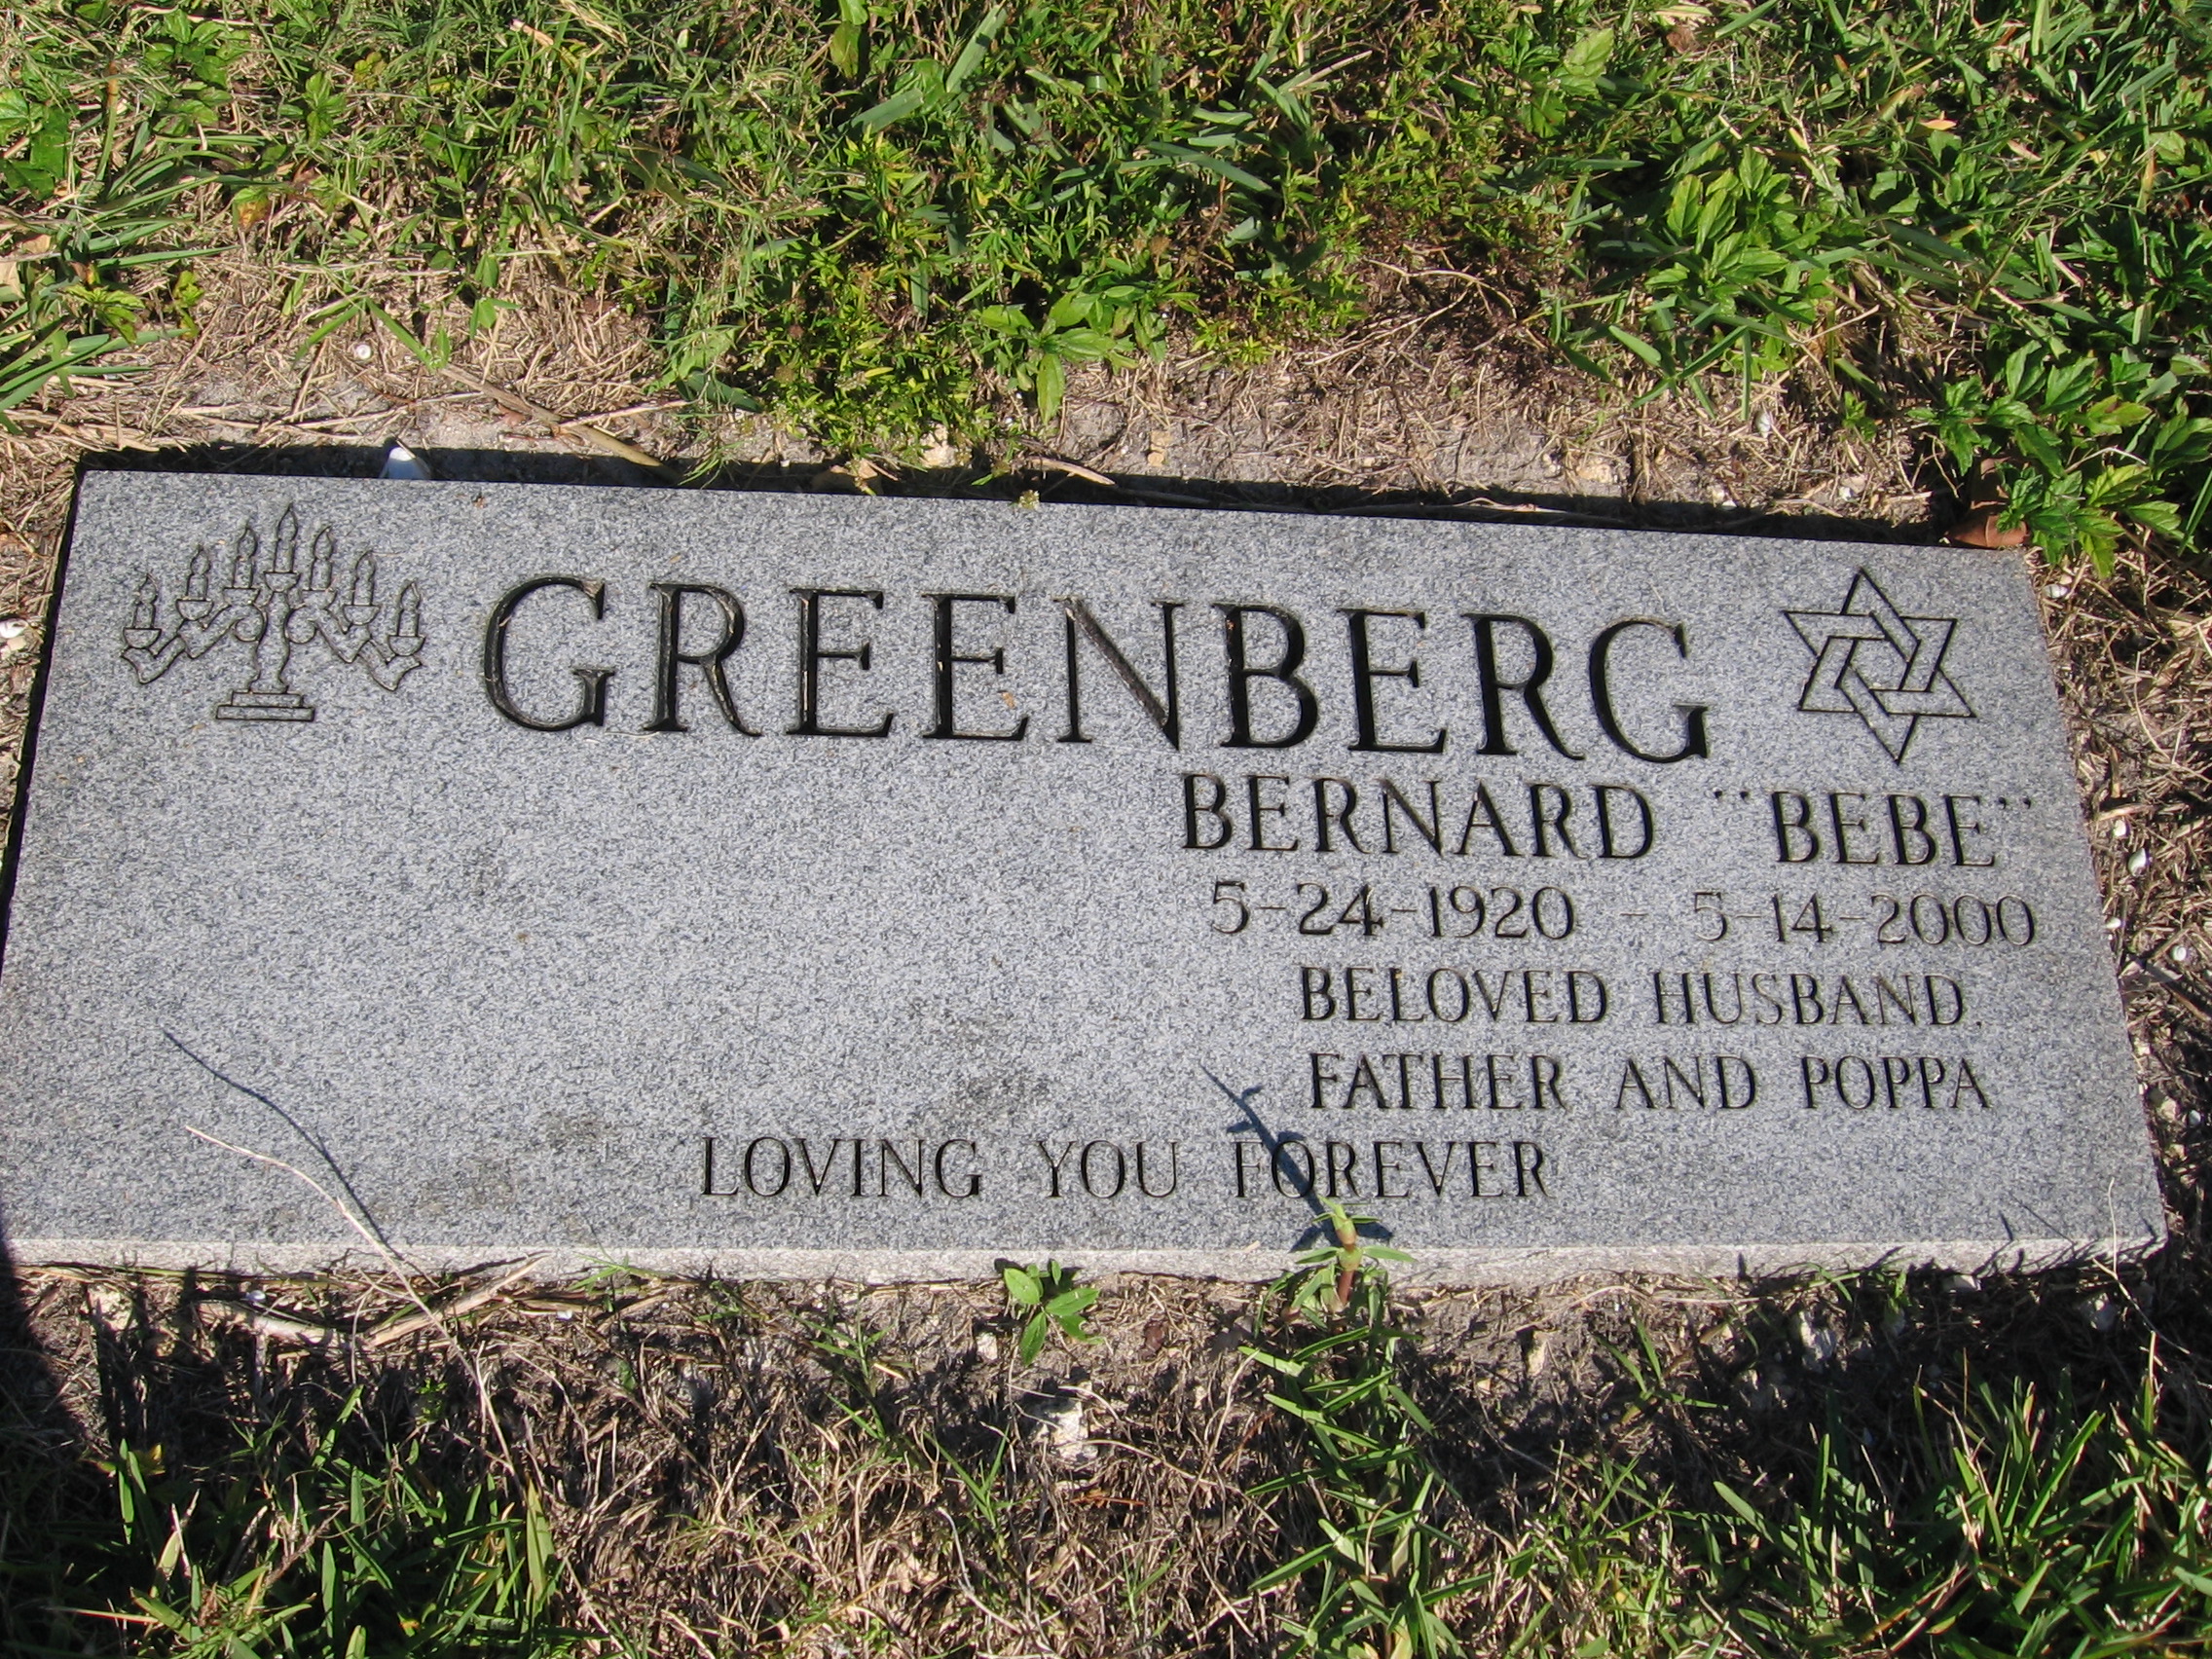 Bernard "Bebe" Greenberg